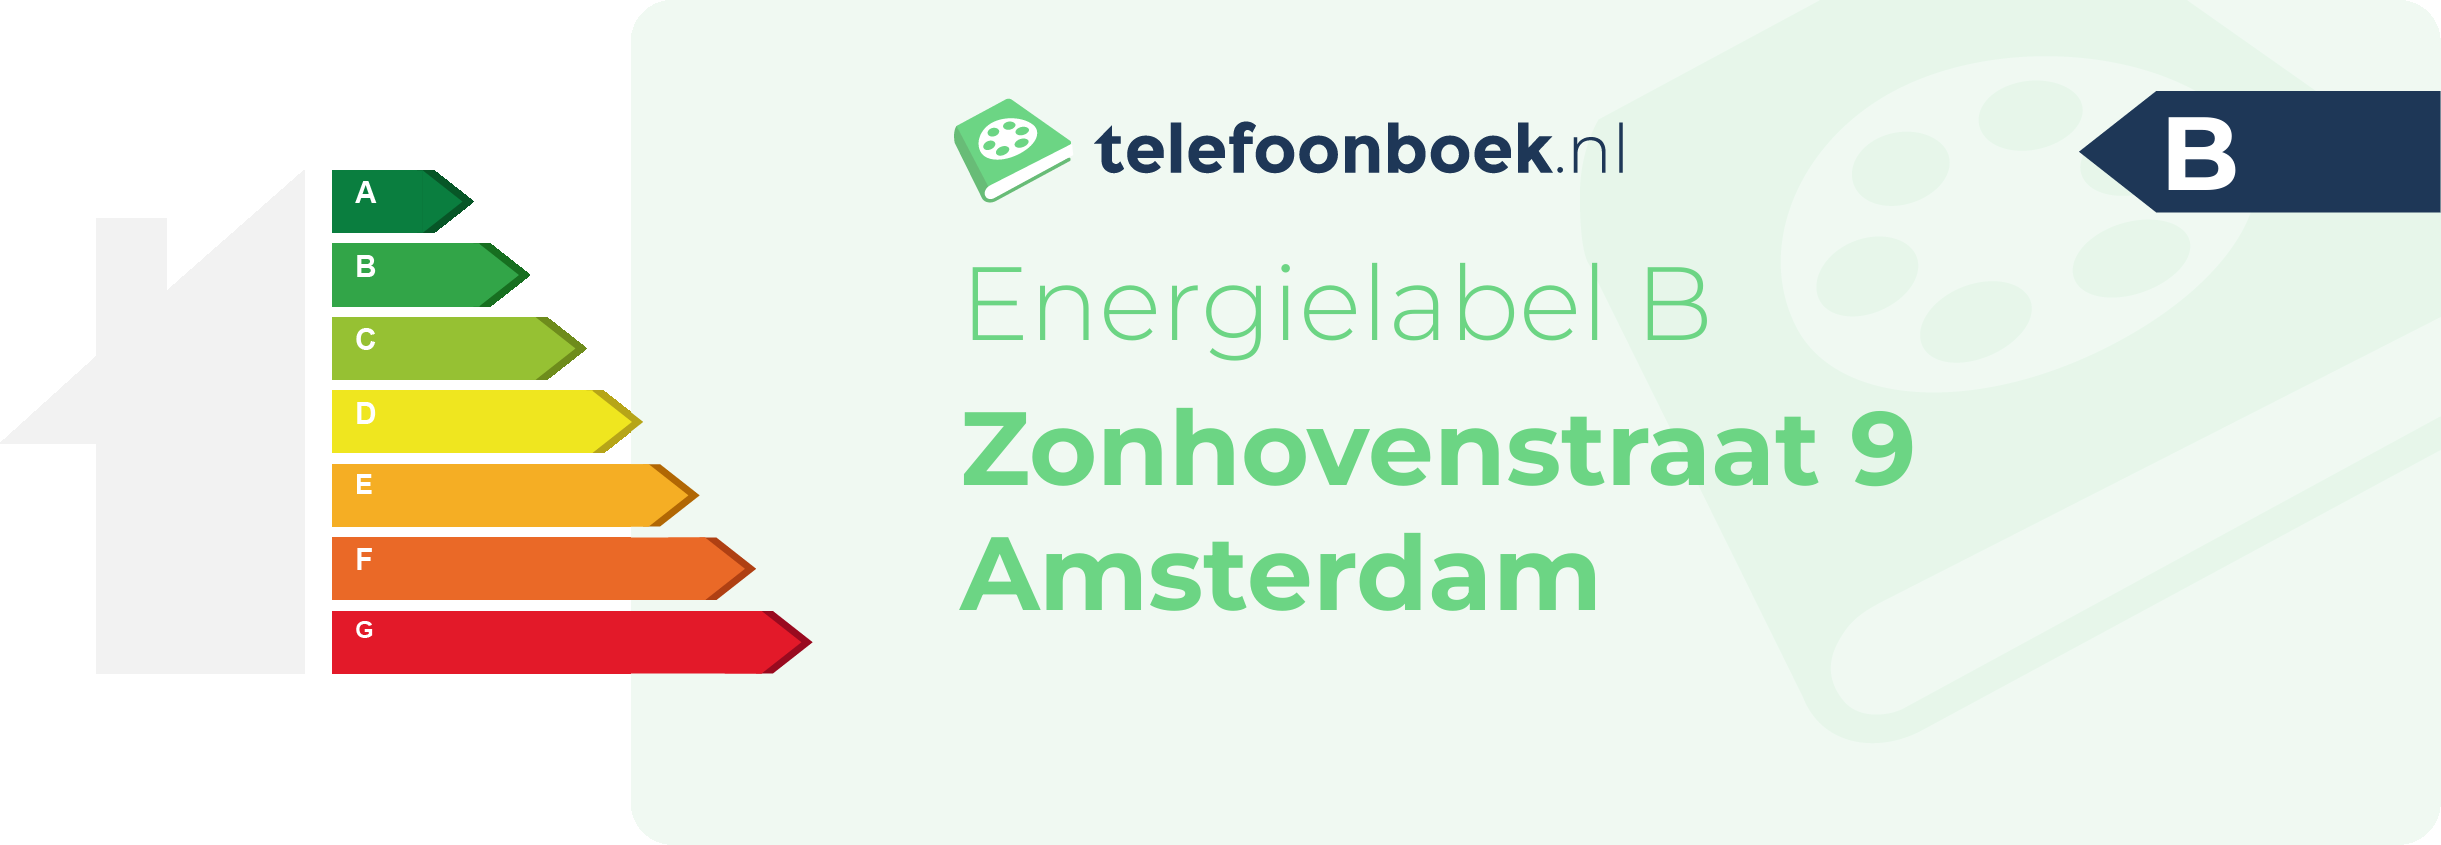 Energielabel Zonhovenstraat 9 Amsterdam